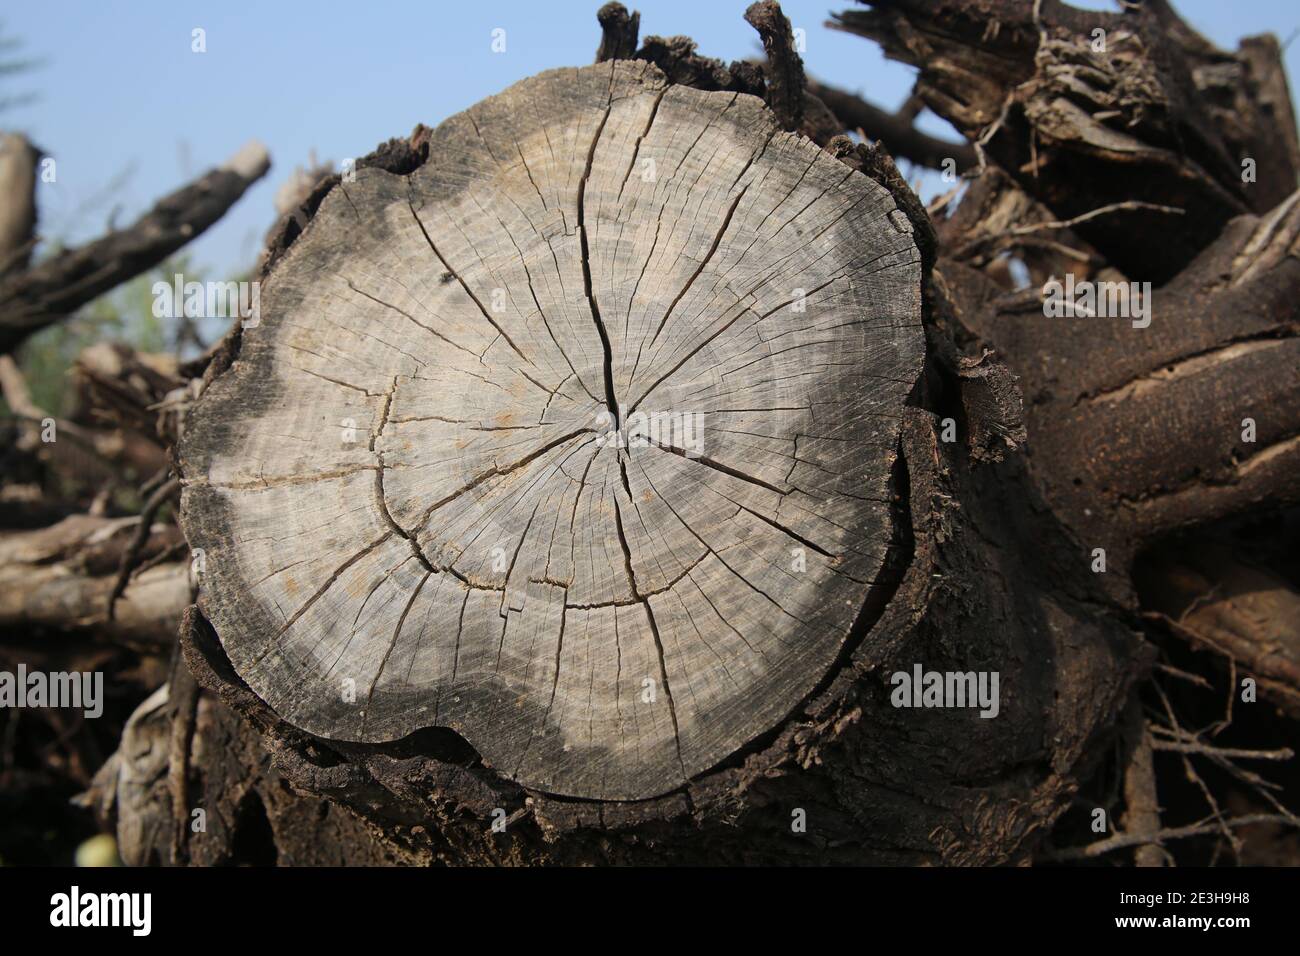 Cerrar una sección a través de un tronco de árbol esto muestra anillos de crecimiento marcados. Los anillos visibles aparecen como resultado del cambio en la tasa de crecimiento a través del mar Foto de stock